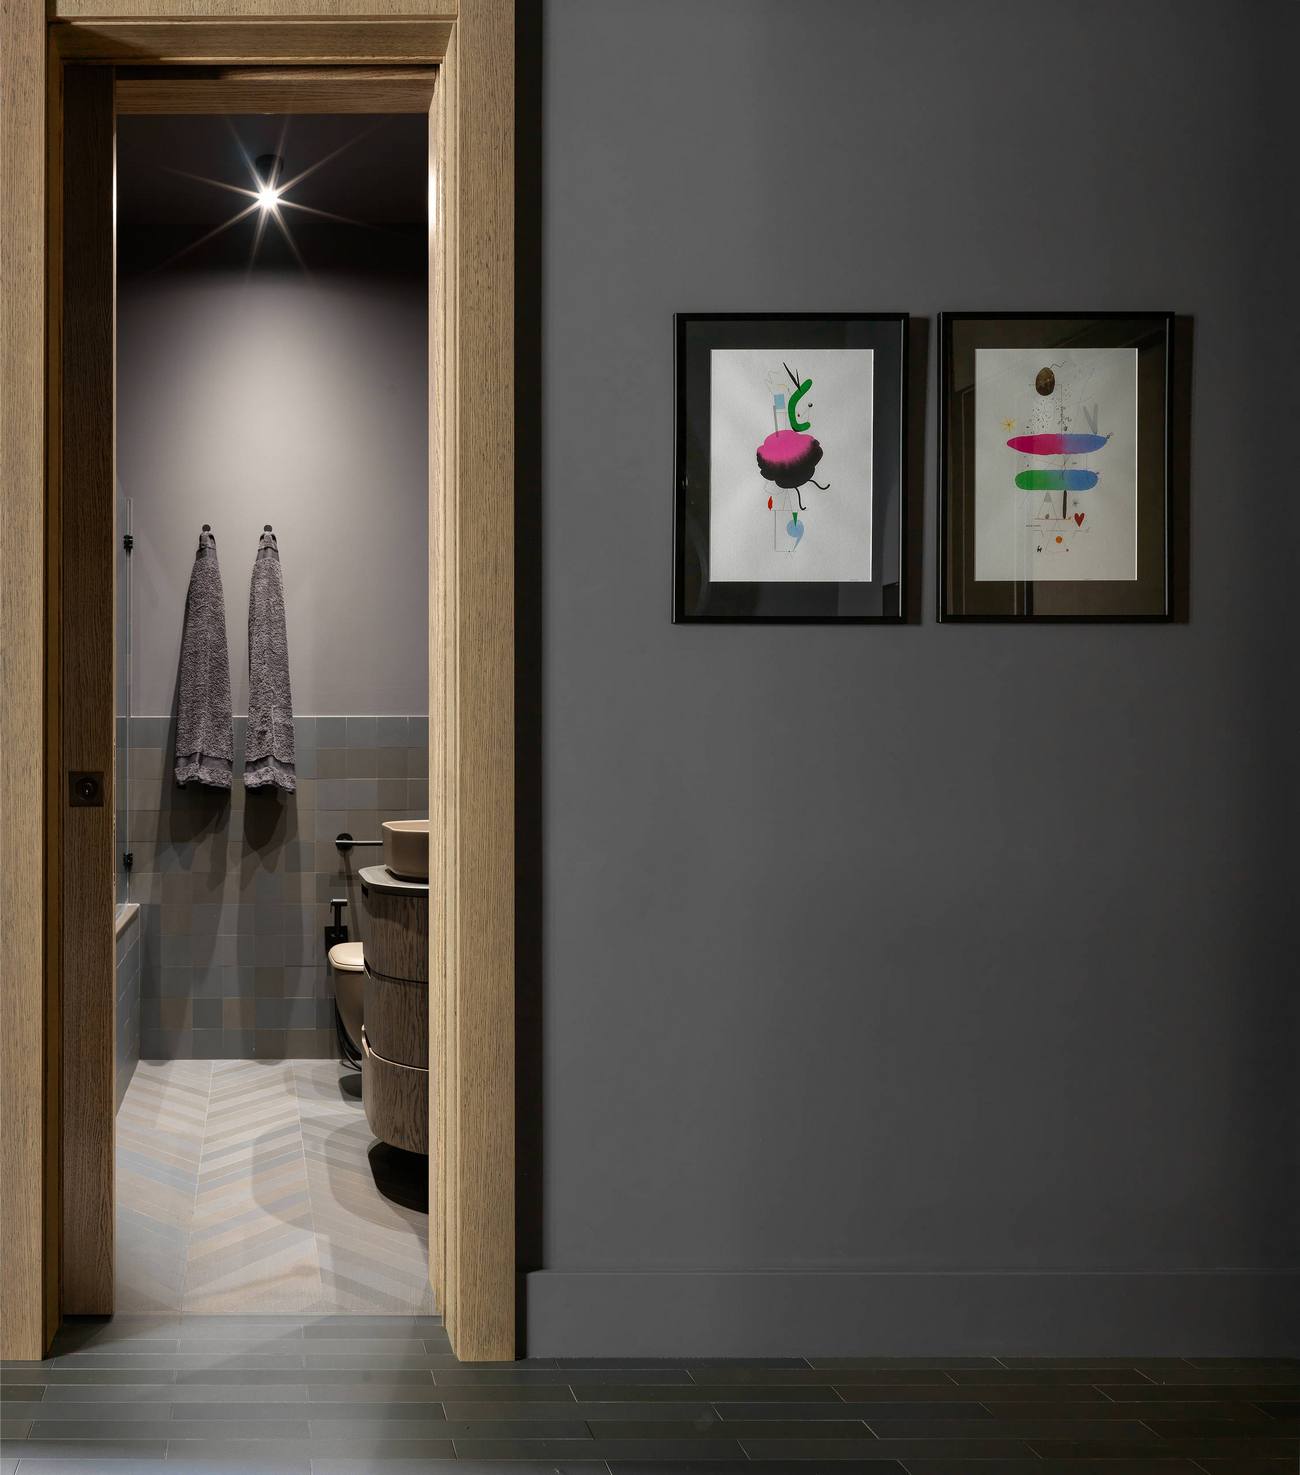 Khu vực phòng tắm và nhà vệ sinh được bố trí ngay tại hành lang vào nhà, ở góc trái. Bên ngoài là cửa gỗ, trên tương trang trí 2 bức tranh để giảm đi sự đơn điệu cho bức tường màu xám.